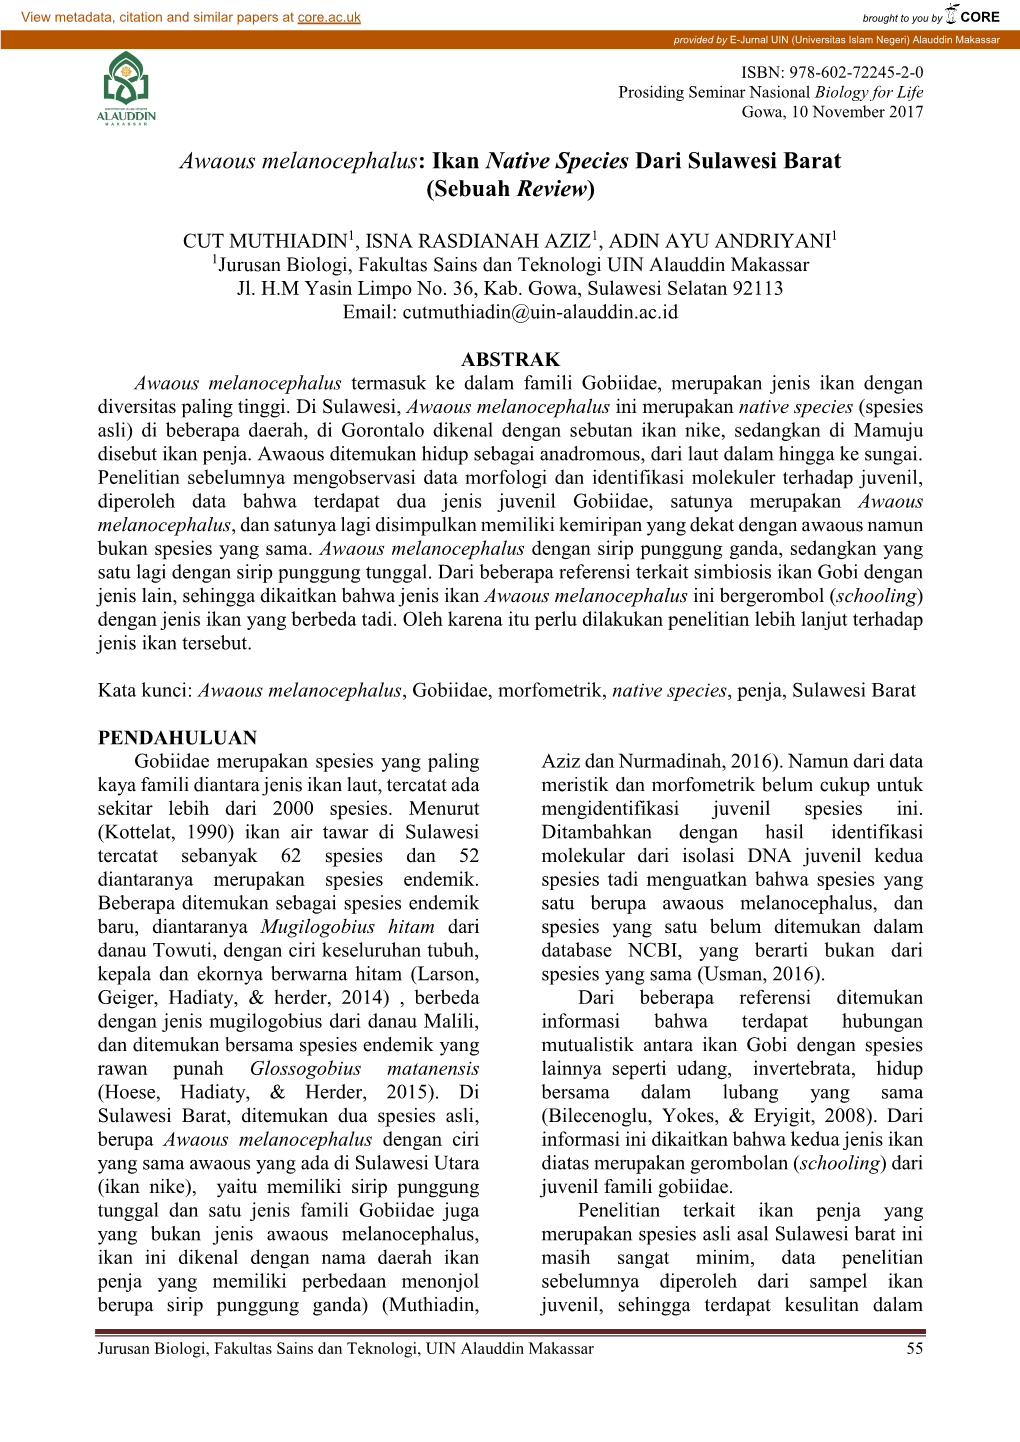 Awaous Melanocephalus: Ikan Native Species Dari Sulawesi Barat (Sebuah Review)